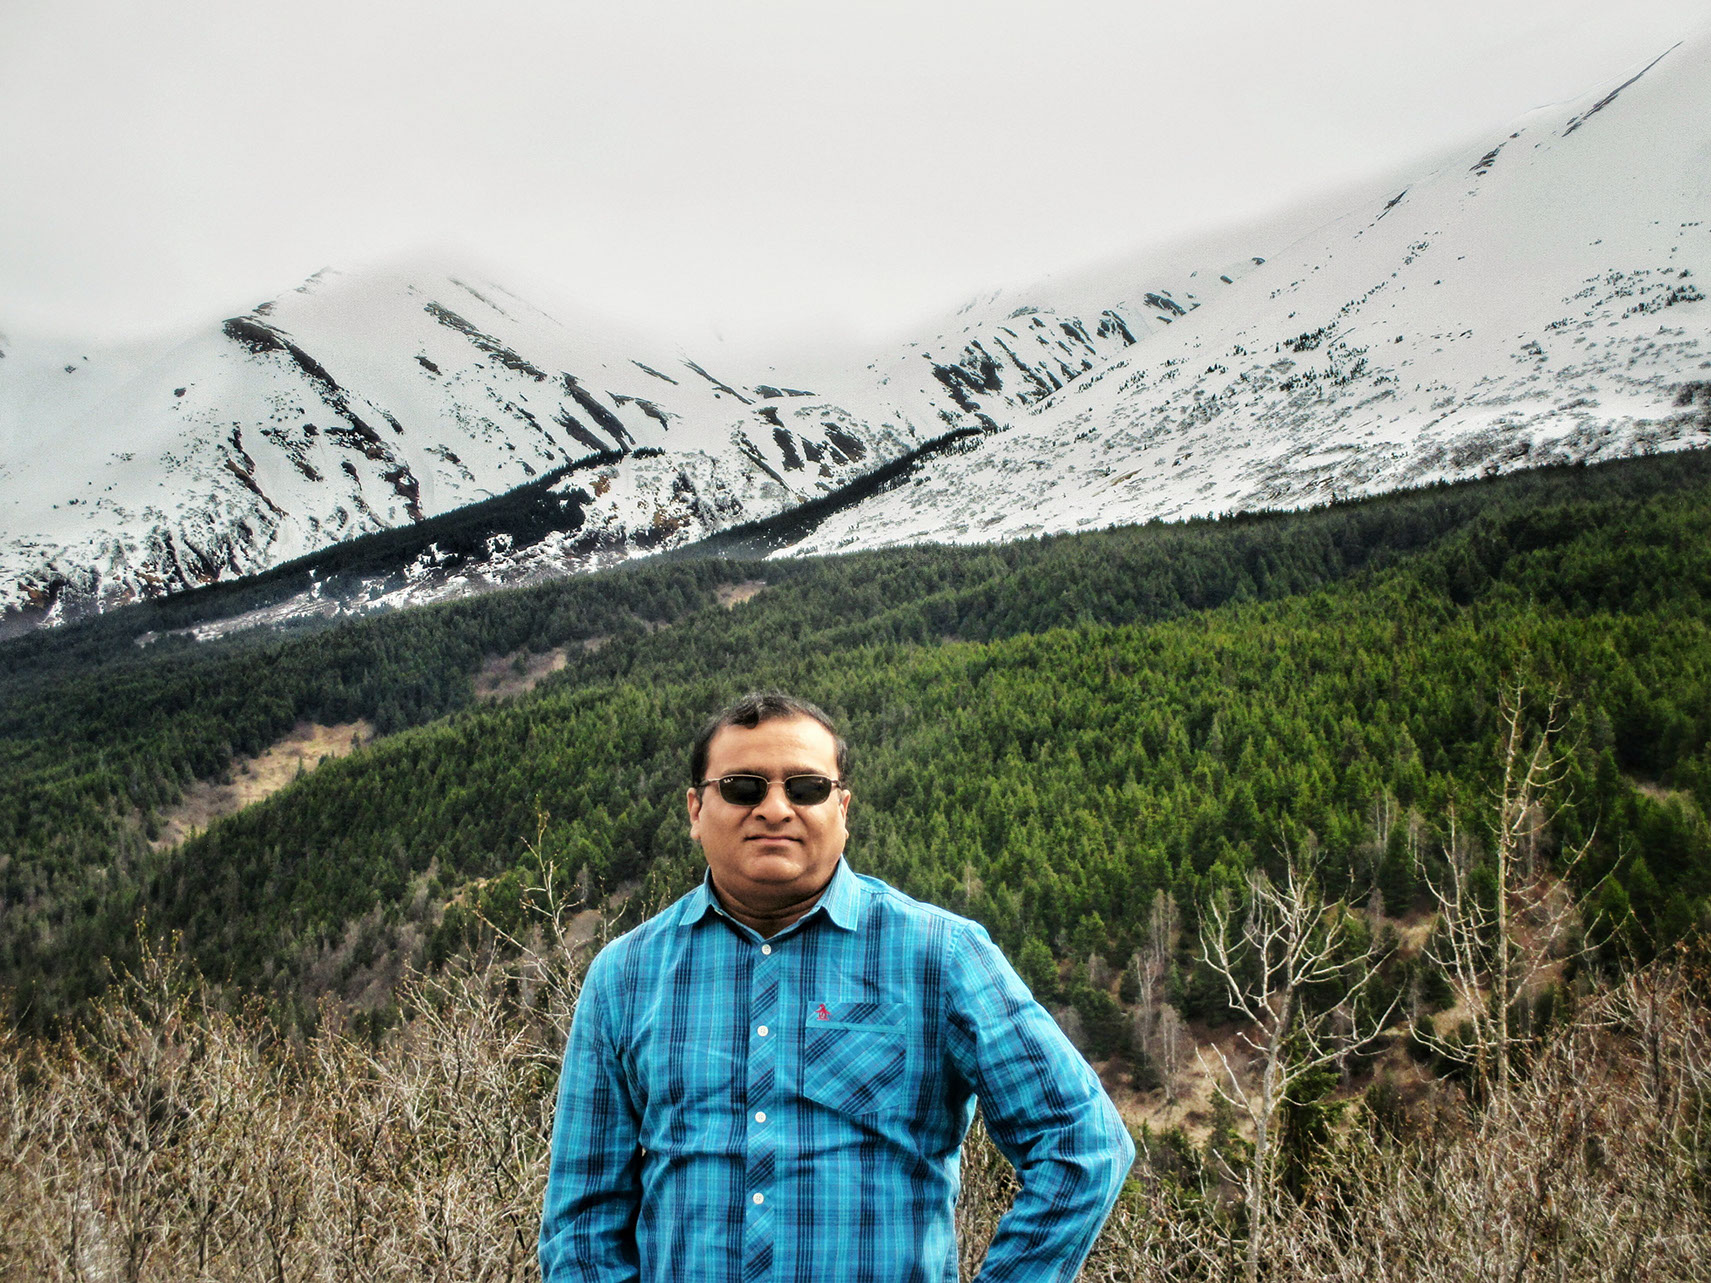 Here is Rahuldev Rajguru, excited for the most incredible Alaska road trip